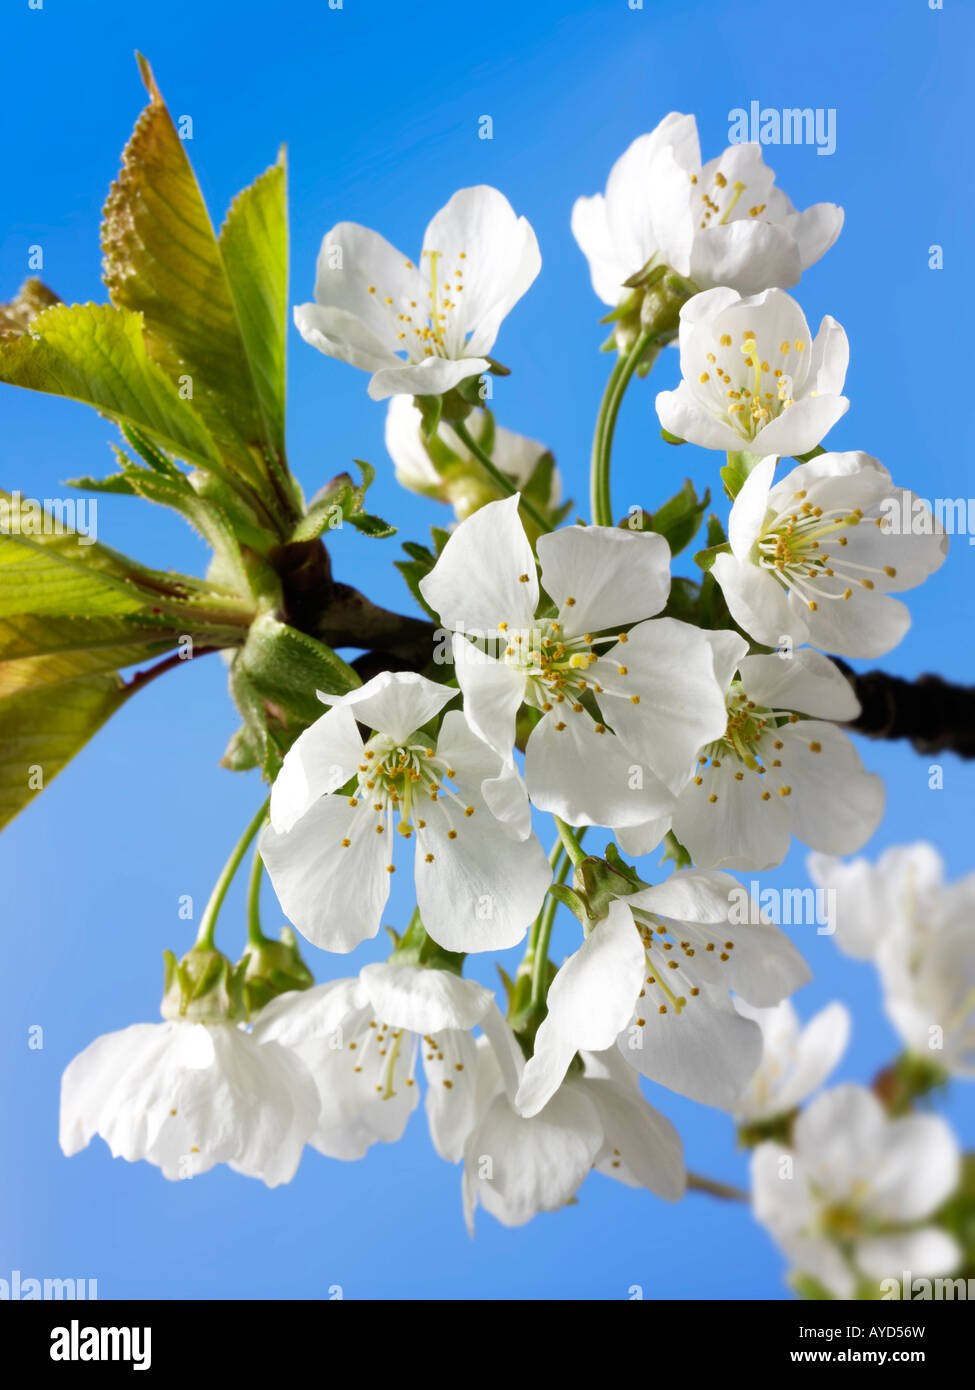 Bilder von frischem Weiß Cherry Blossom, Blumen und Blüten frisch von einem Kirschbaum abgeholt Stockfoto